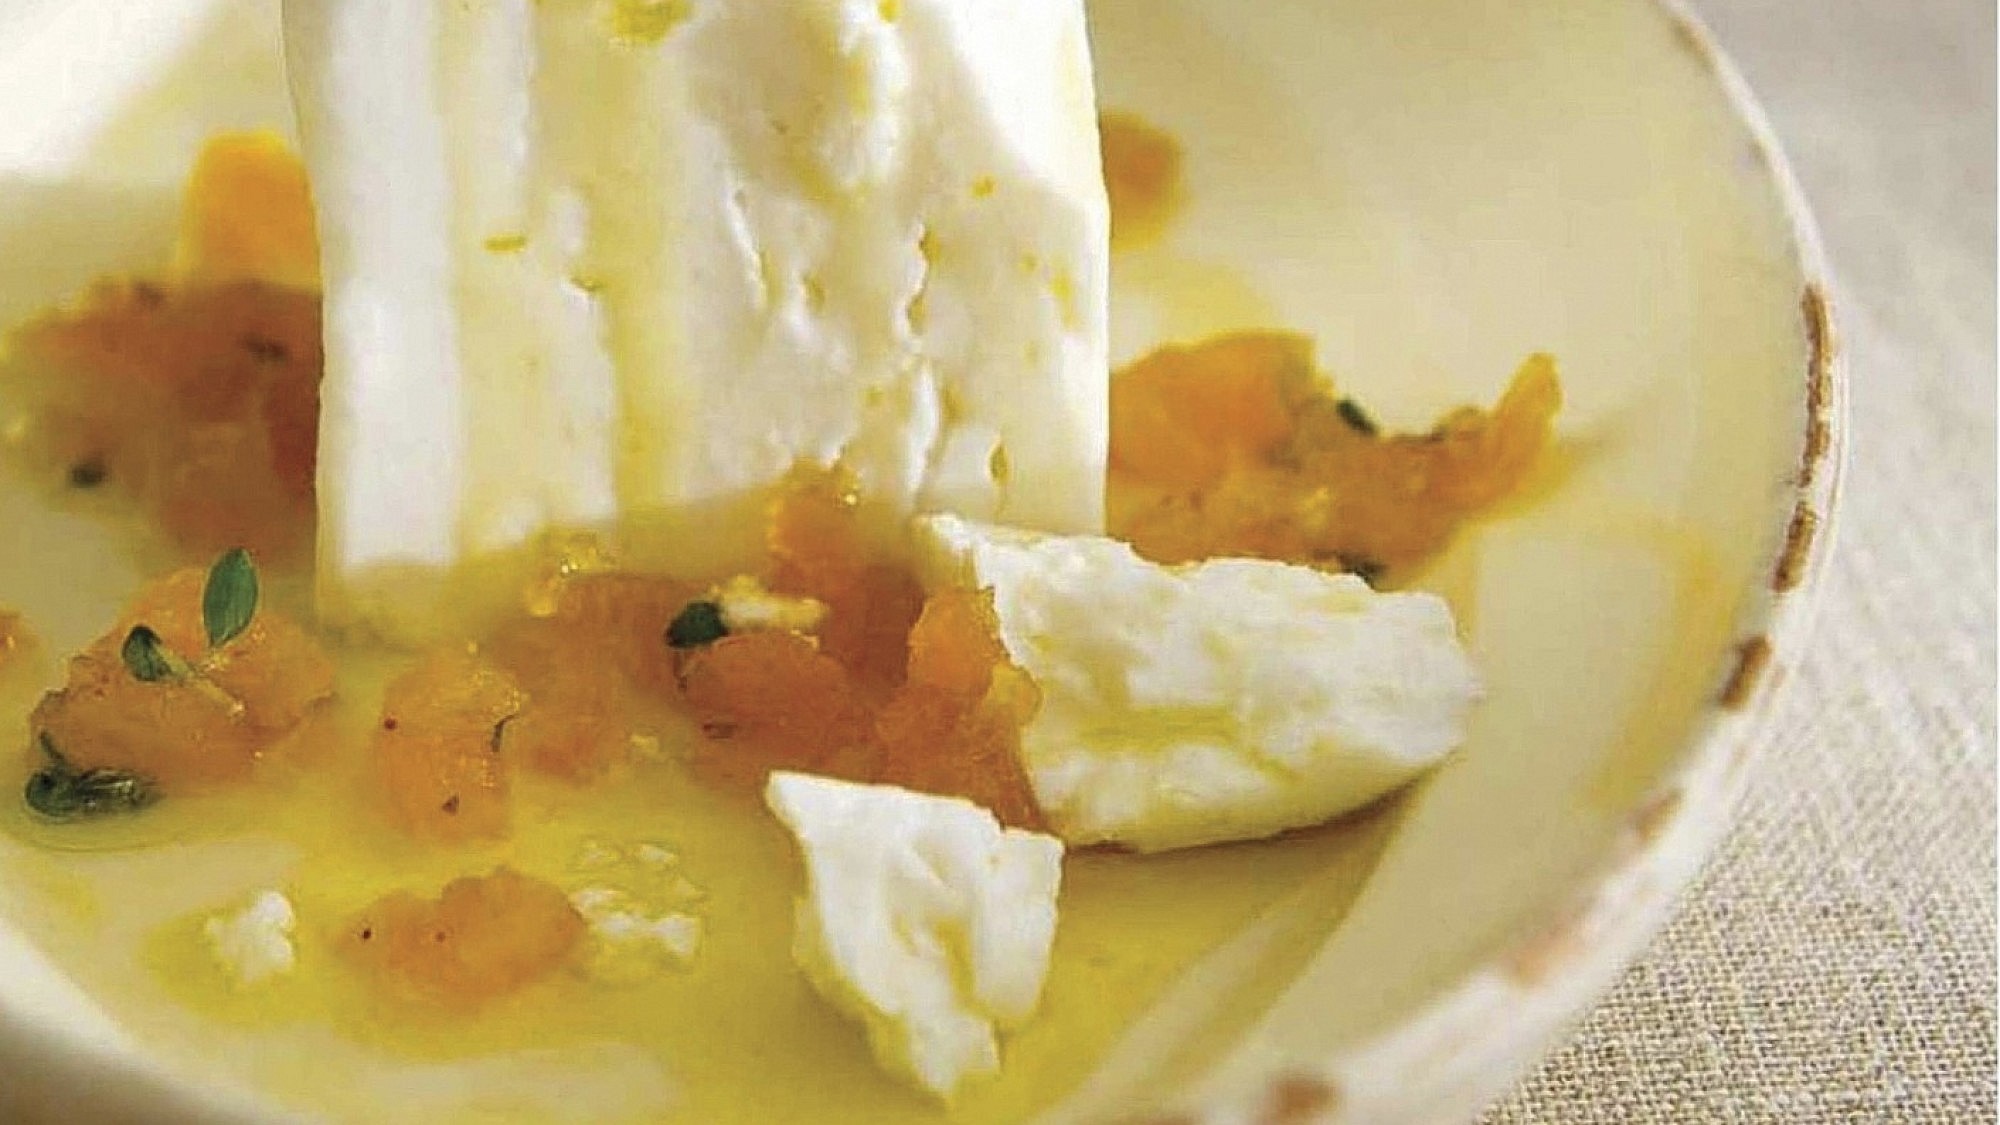 גבינת פטה עם טפנאד משמשים מיובשים של שף ארז ארז קומרובסקי. צילום: ארז בן שחר. סטיילינג: נורית קריב